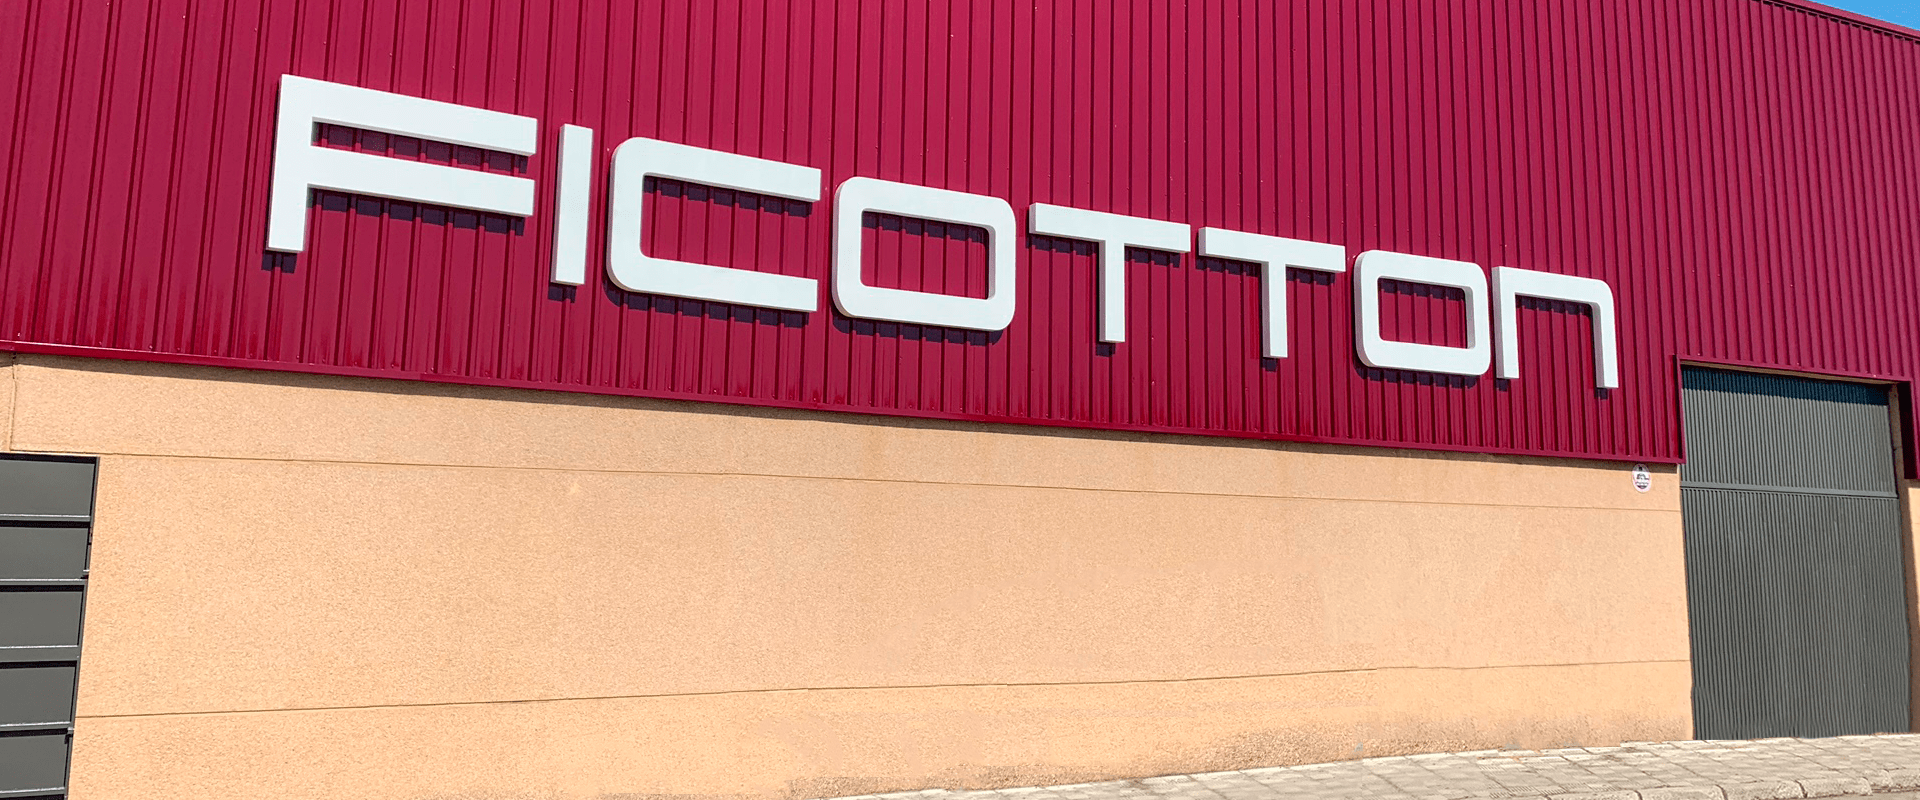 Ficotton, venta de textil al por mayor